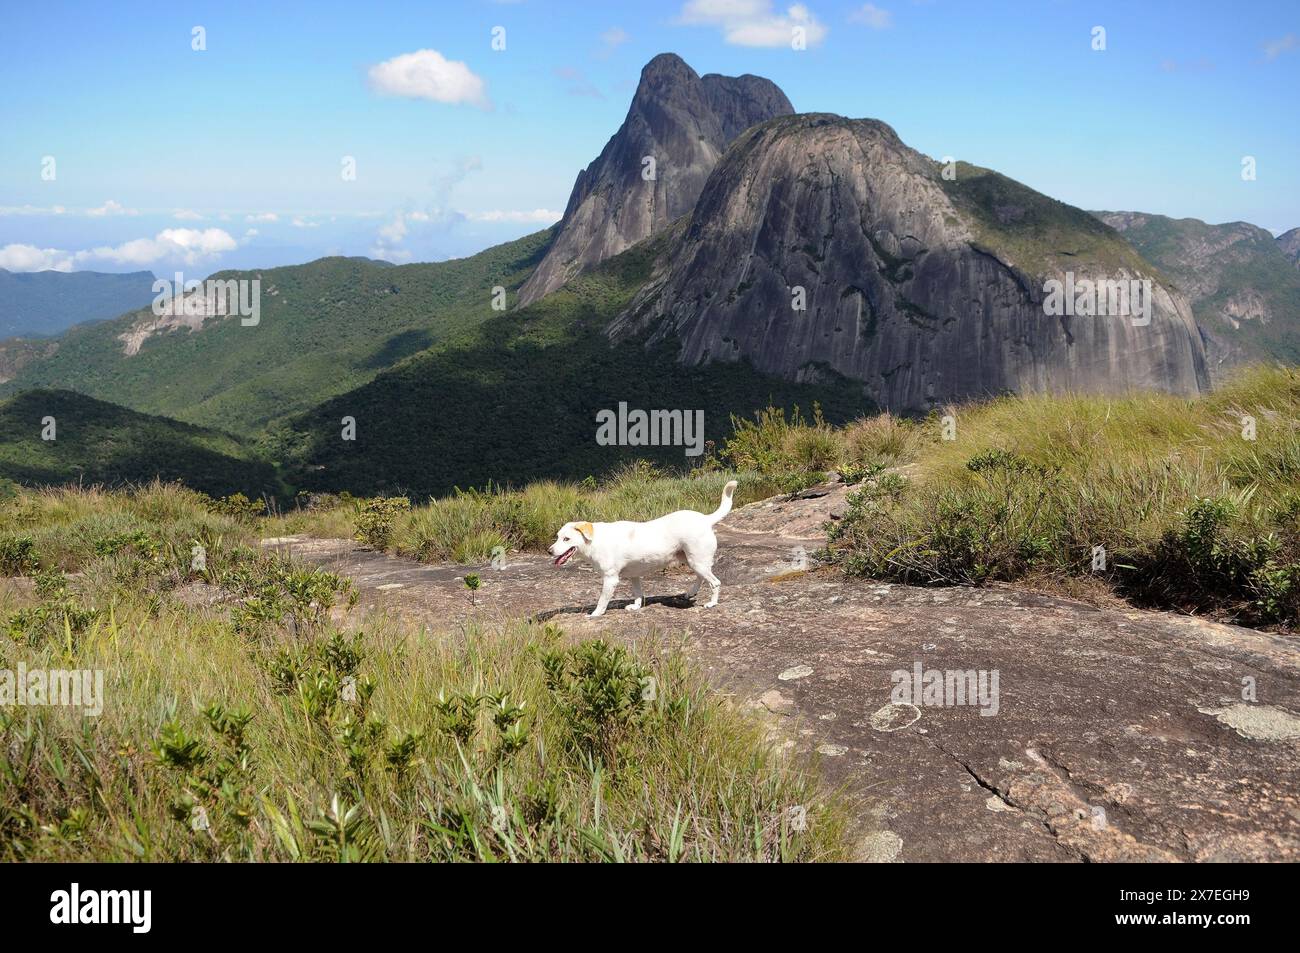 Parco statale di Três Picos. Situato nella Serra do Mar, nella regione montuosa della città di Nova Friburgo, nello stato di Rio de Janeiro Foto Stock